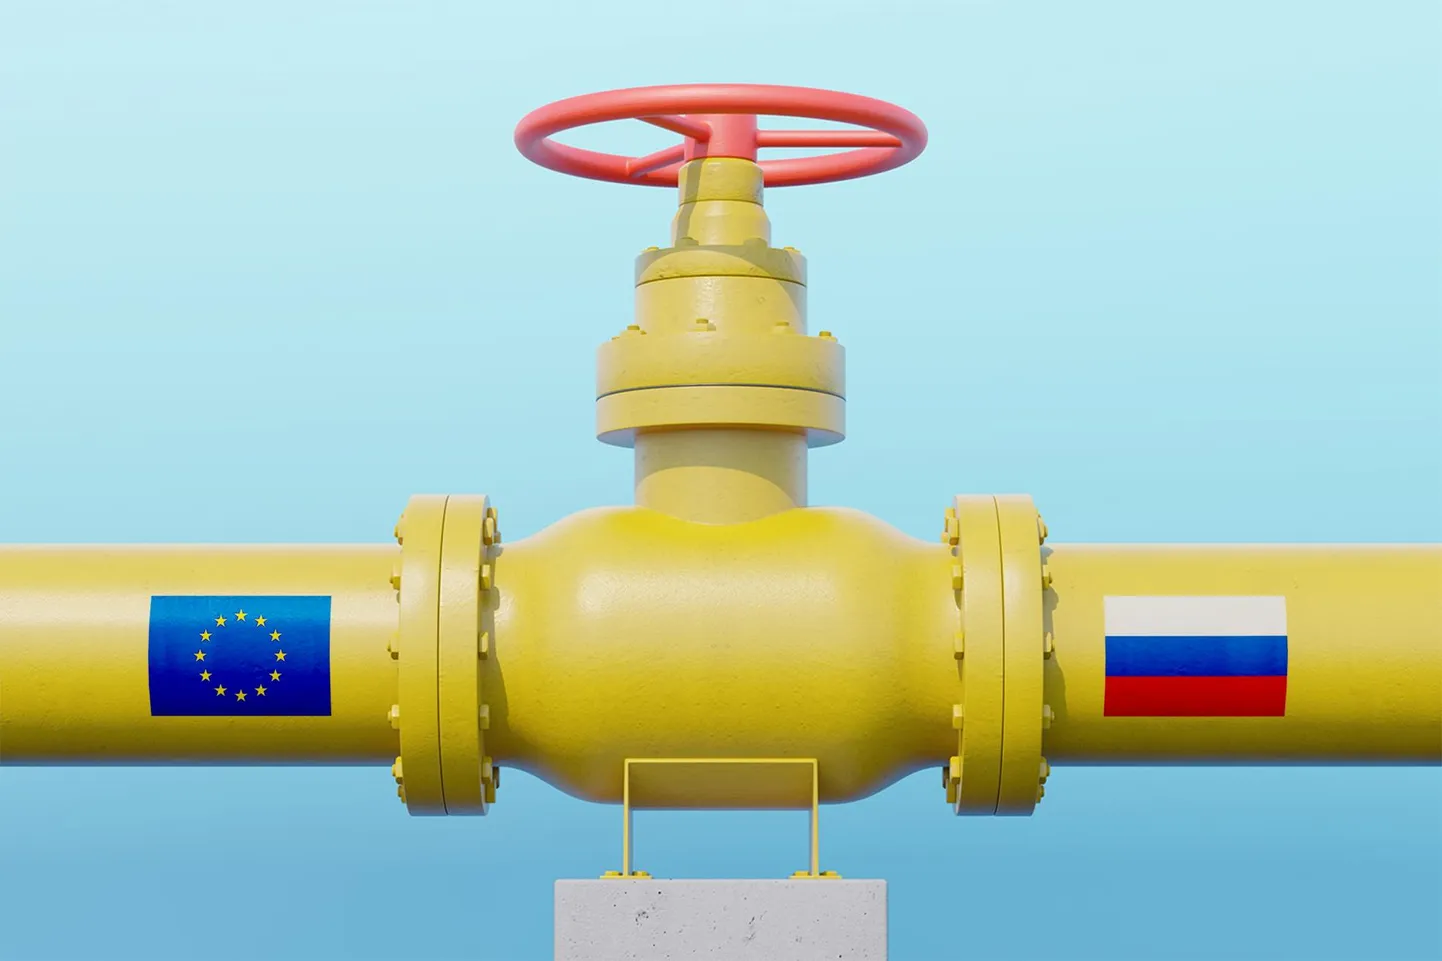 Представитель Кремля Дмитрий Песков заявил, что требование России о платежах в рублях повлияет на расчеты за газ в конце апреля и в мае.